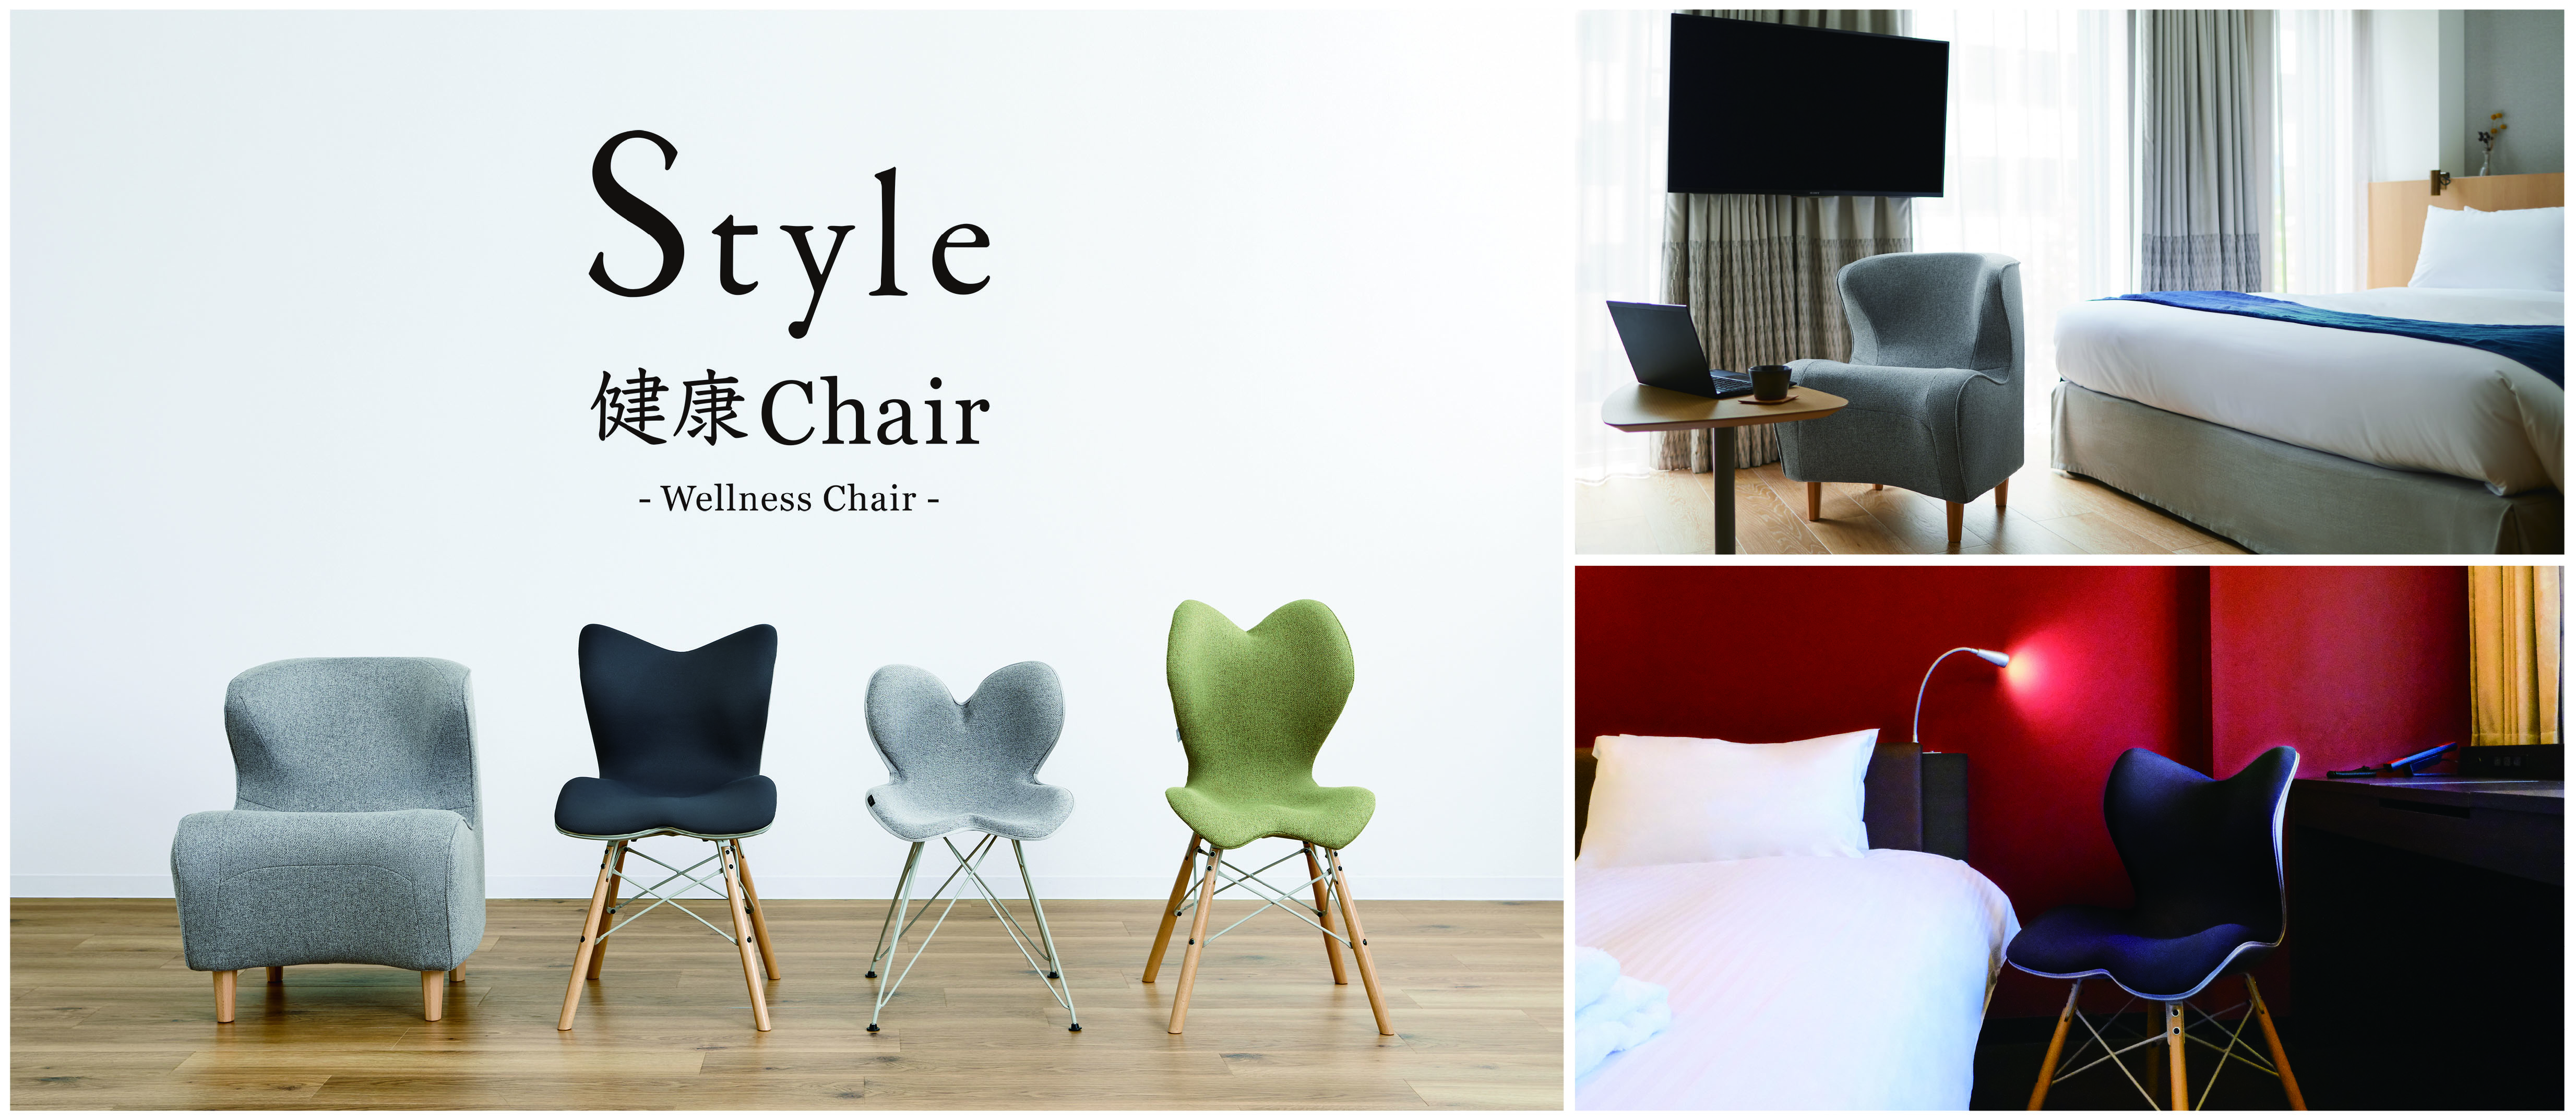 姿勢サポートブランド「Style」とタイアップ 正しい姿勢へ導く新商品「Style健康Chair」を自由に体験、心も身体も整える癒しの宿泊プランを販売開始  | NEWSCAST